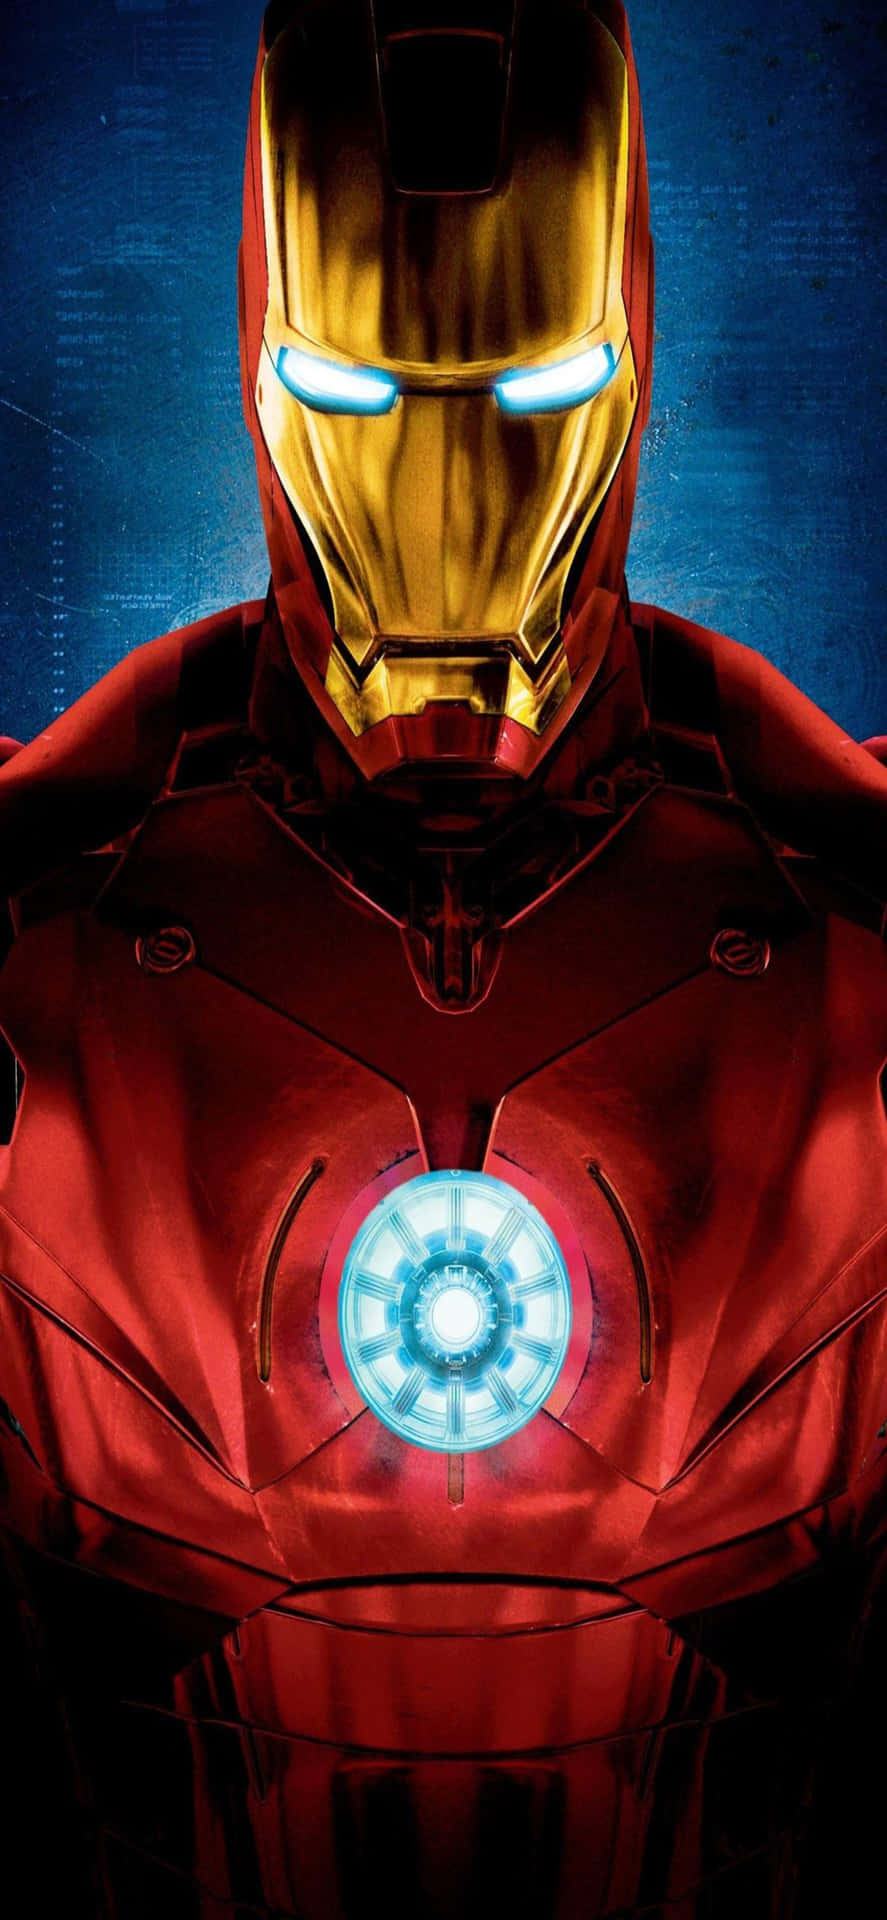 Iphonex Bakgrundsbild Med Skinande Iron Man-dräkt.